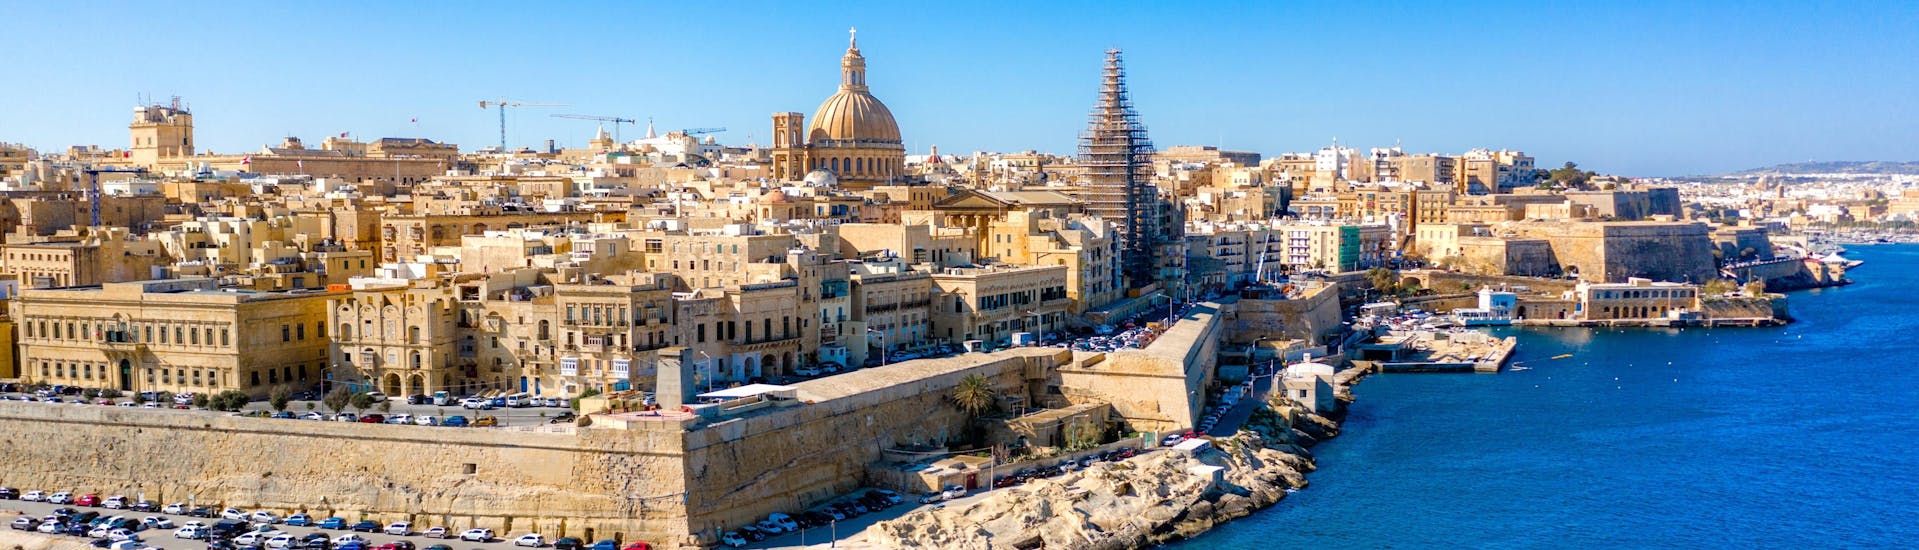 La ciudad de Sliema y su costa en Malta.